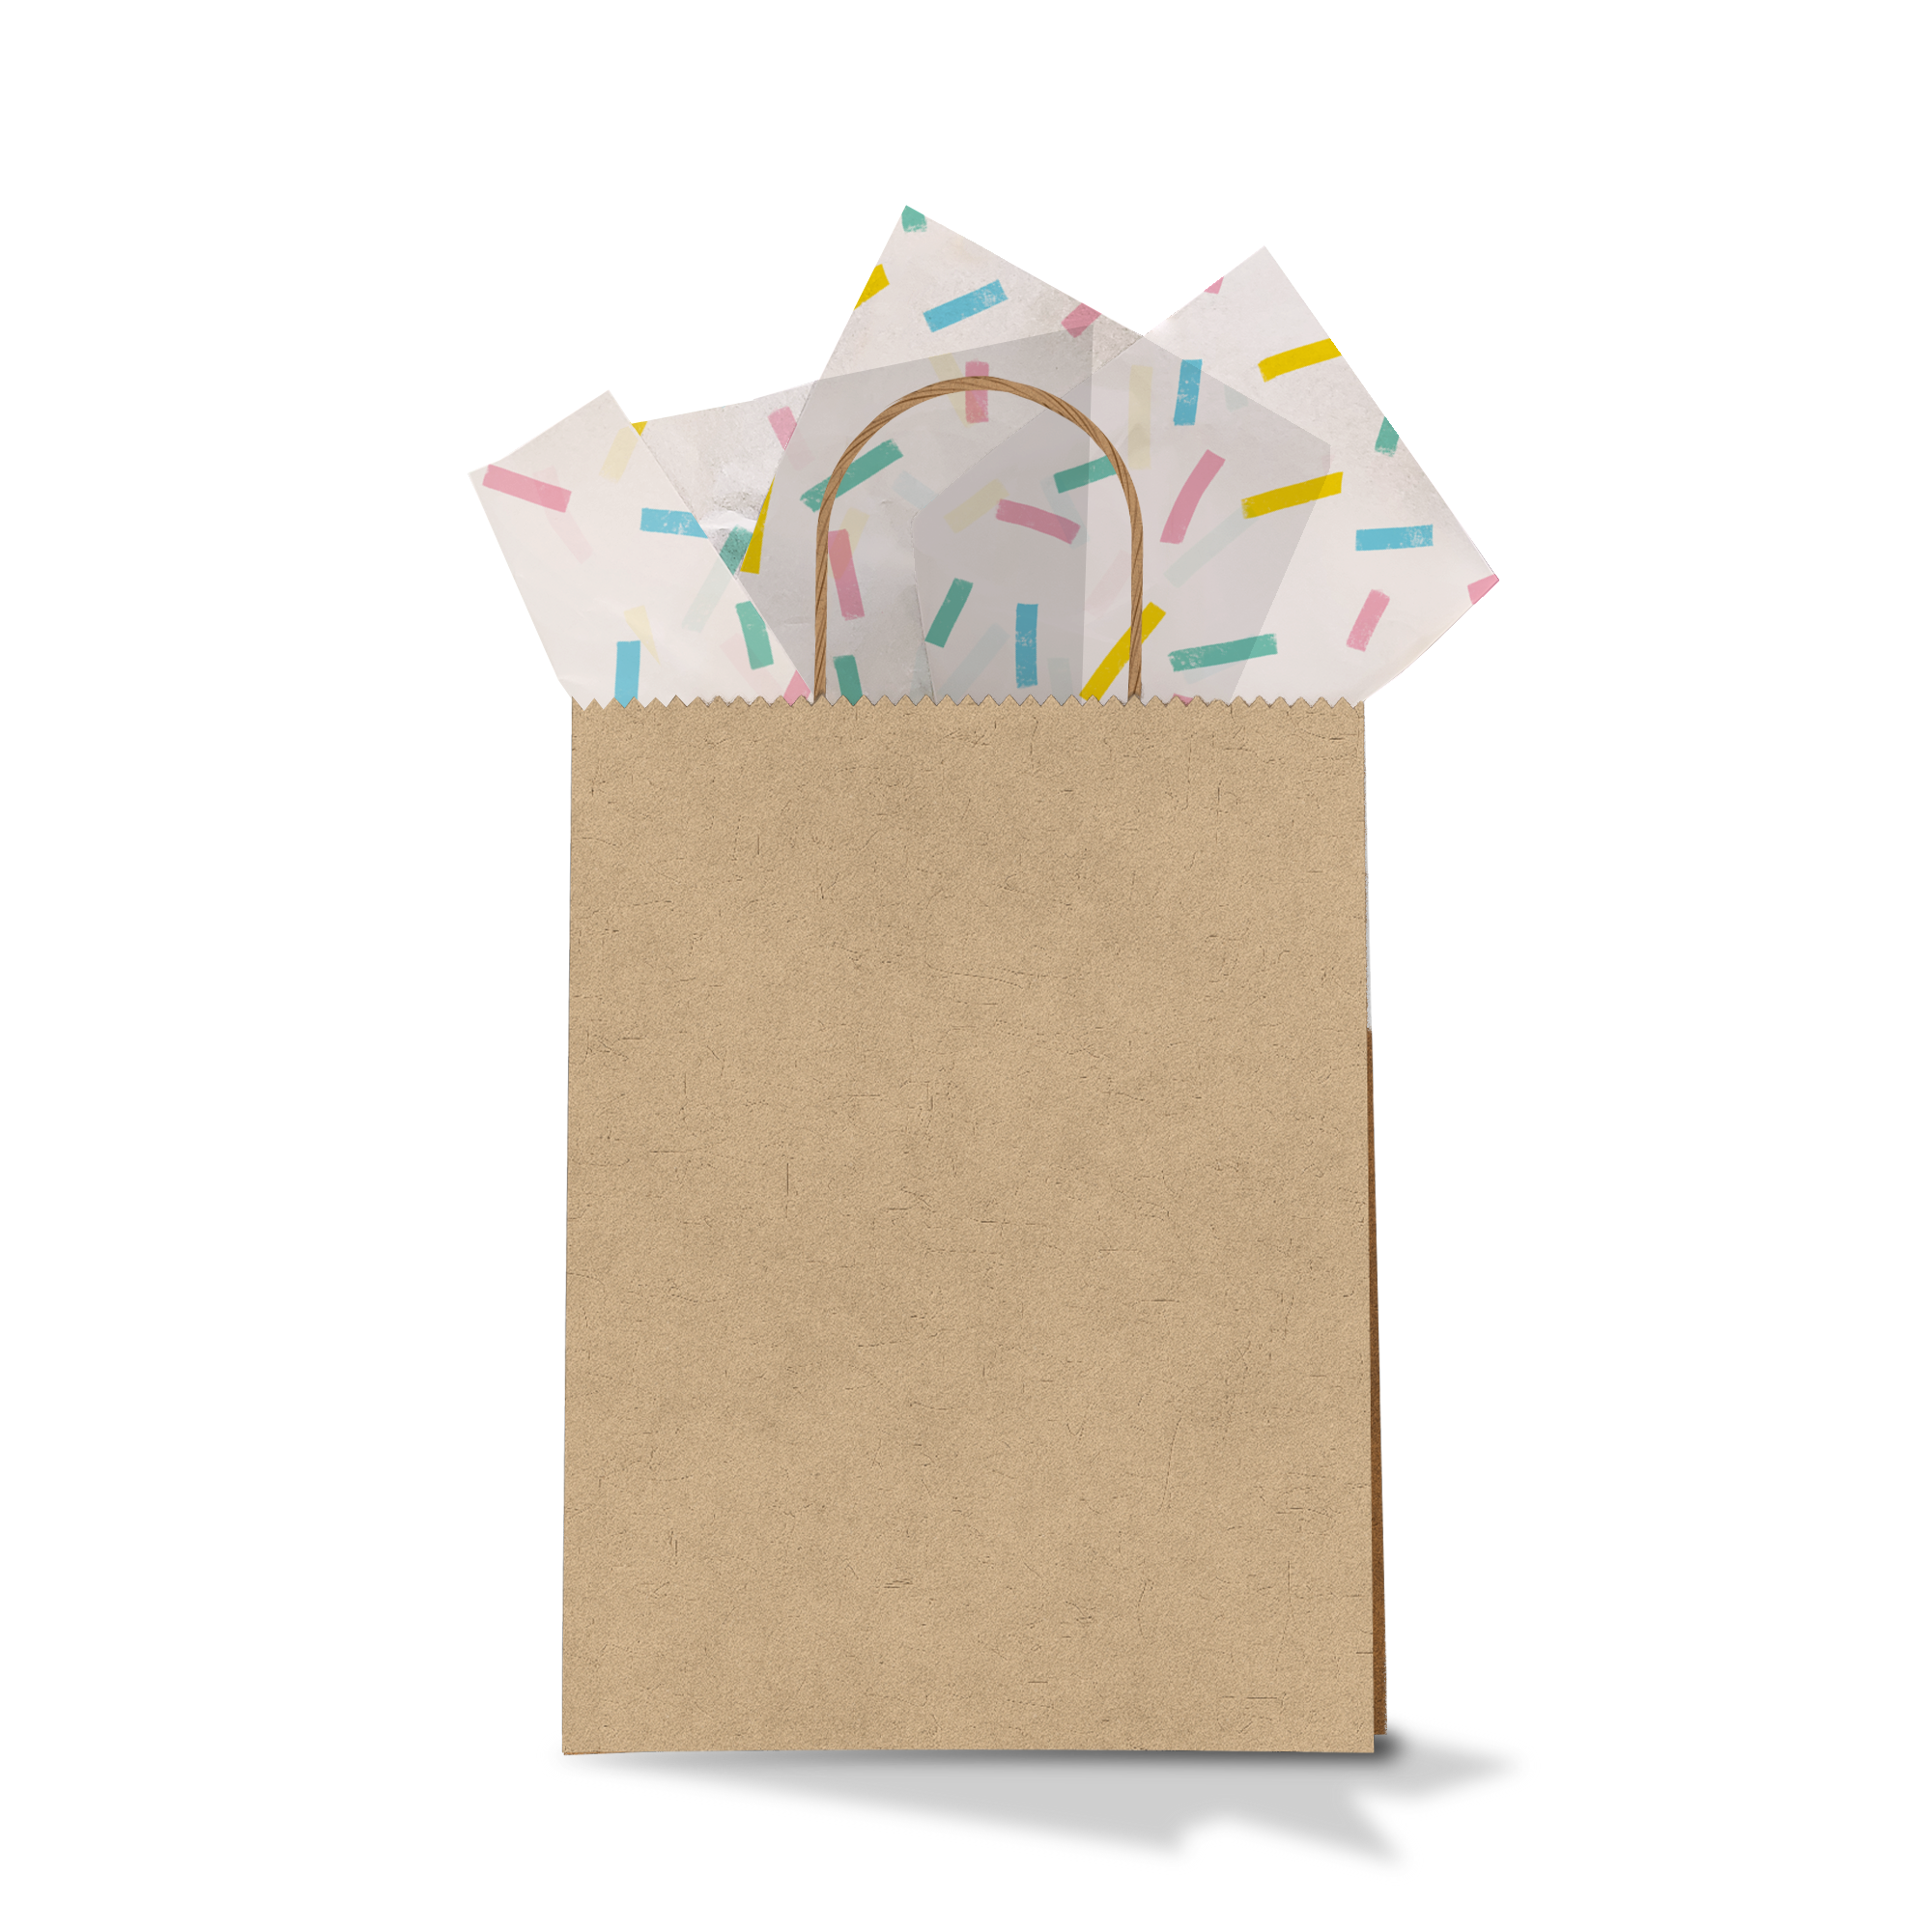 Confetti Tissue Paper